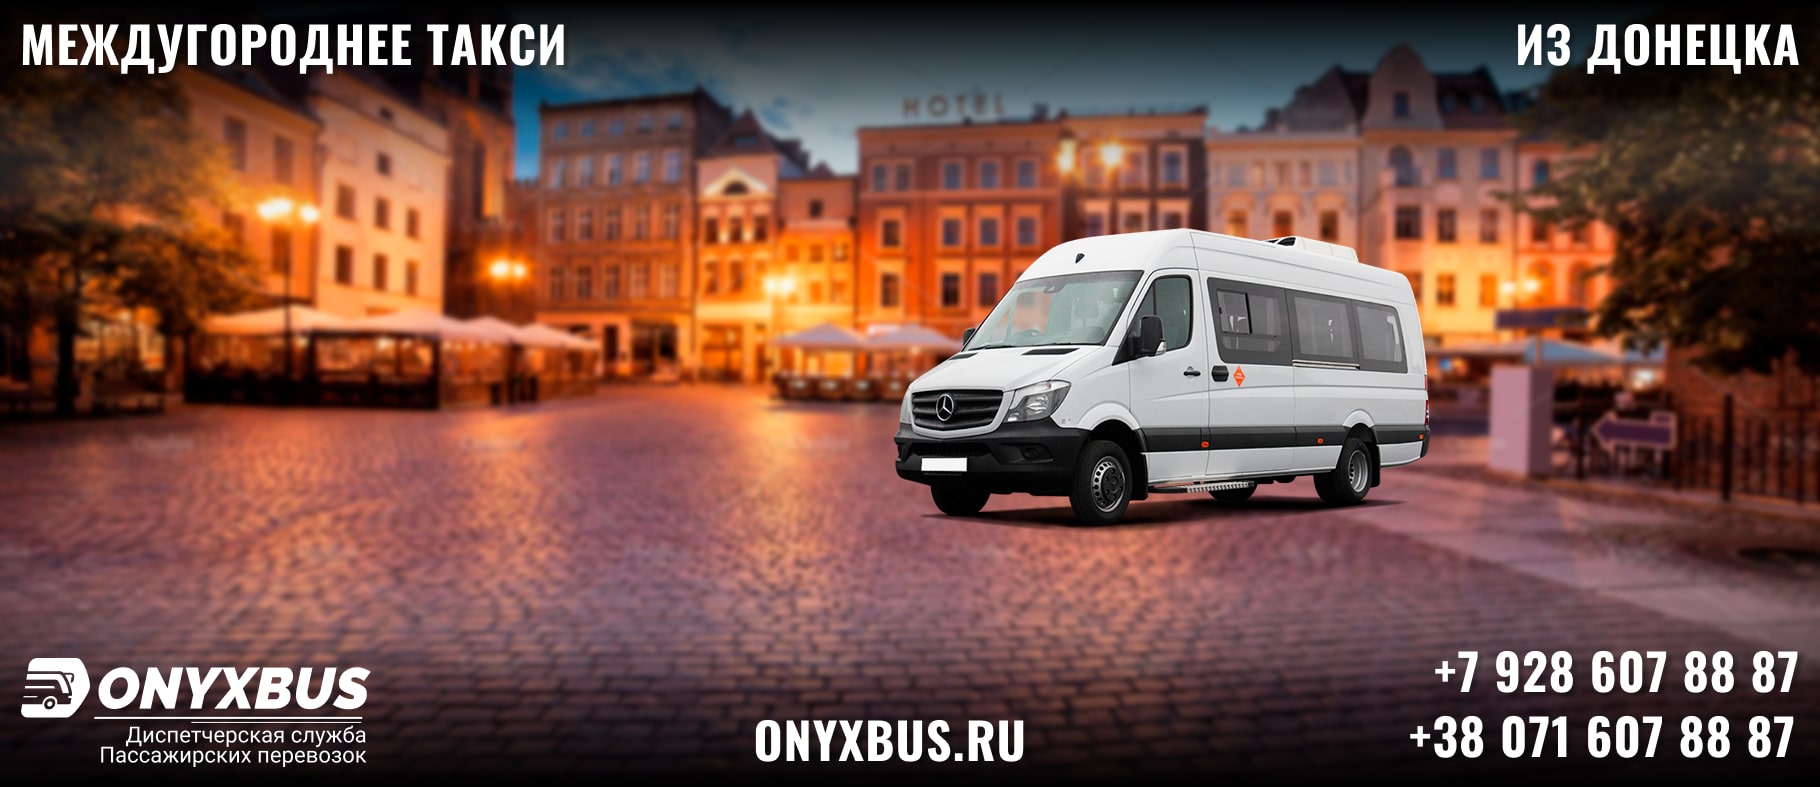 Заказ <br>Микроавтобуса Коктебель - Донецк